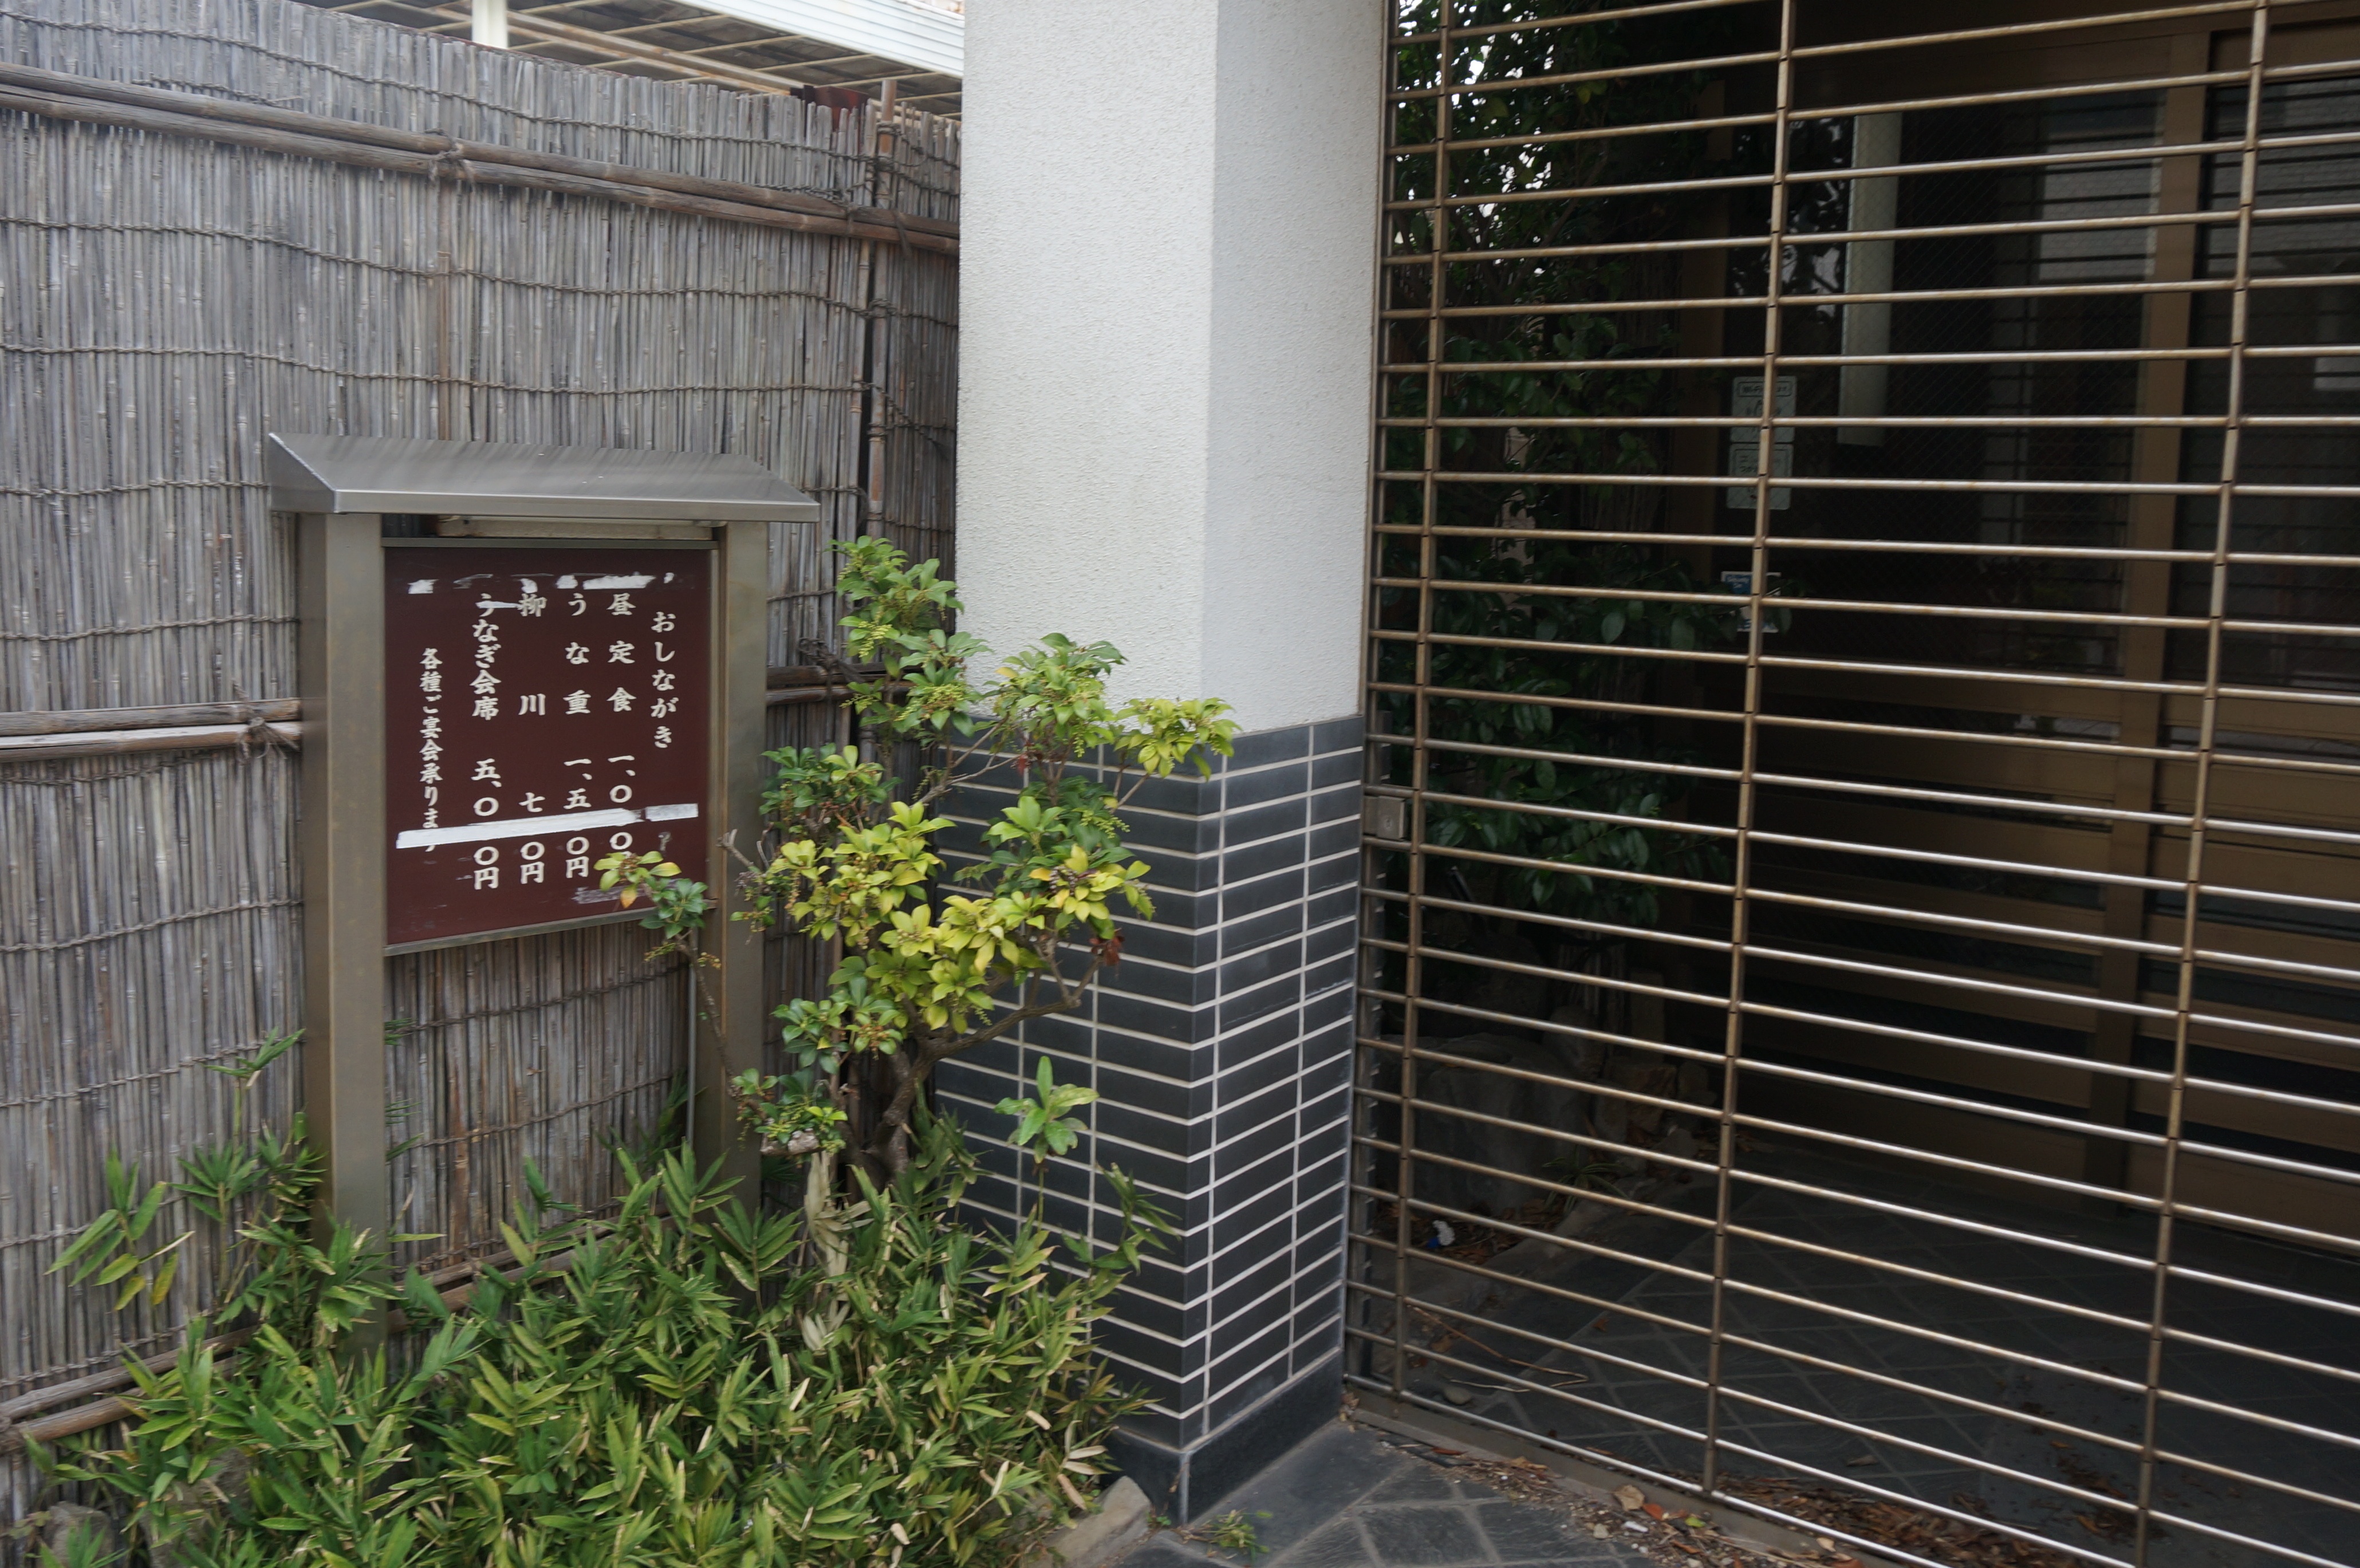 木更津の鰻屋 瓜庄は閉店している Ogu S Blog かずさ便り ちょっとだけpcの話も